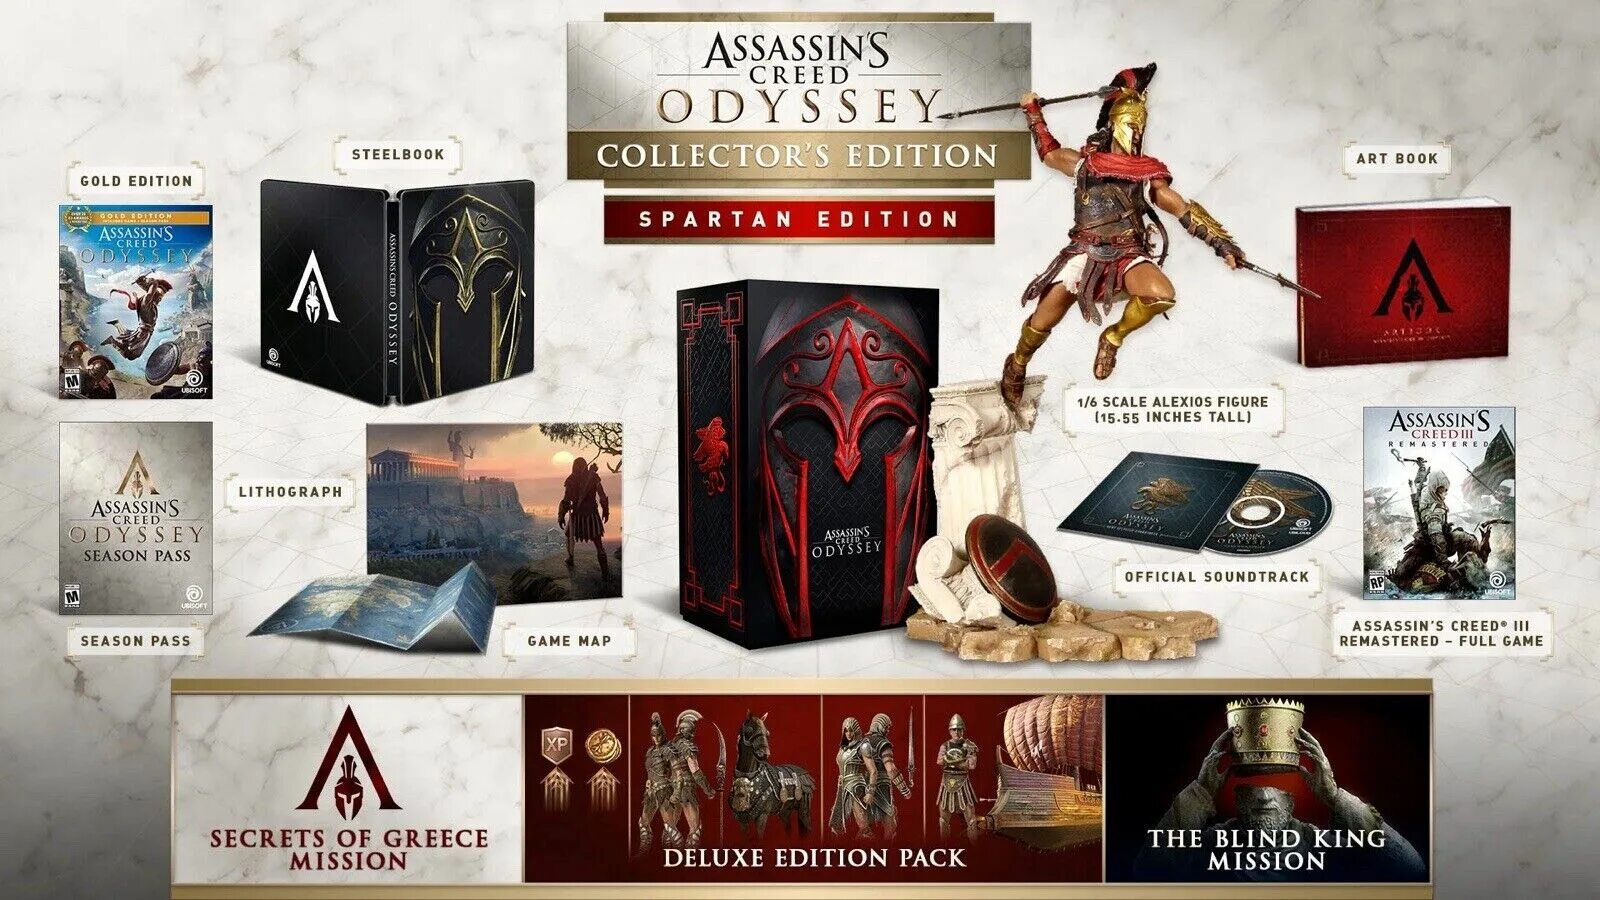 Assassin s creed odyssey editions. Коллекционное издание ассасин Крид 1. Коллекционка ассасин Крид 2. Коллекционка ассасин Крид Одиссея. Коллекционка Assassins Creed Odyssey.